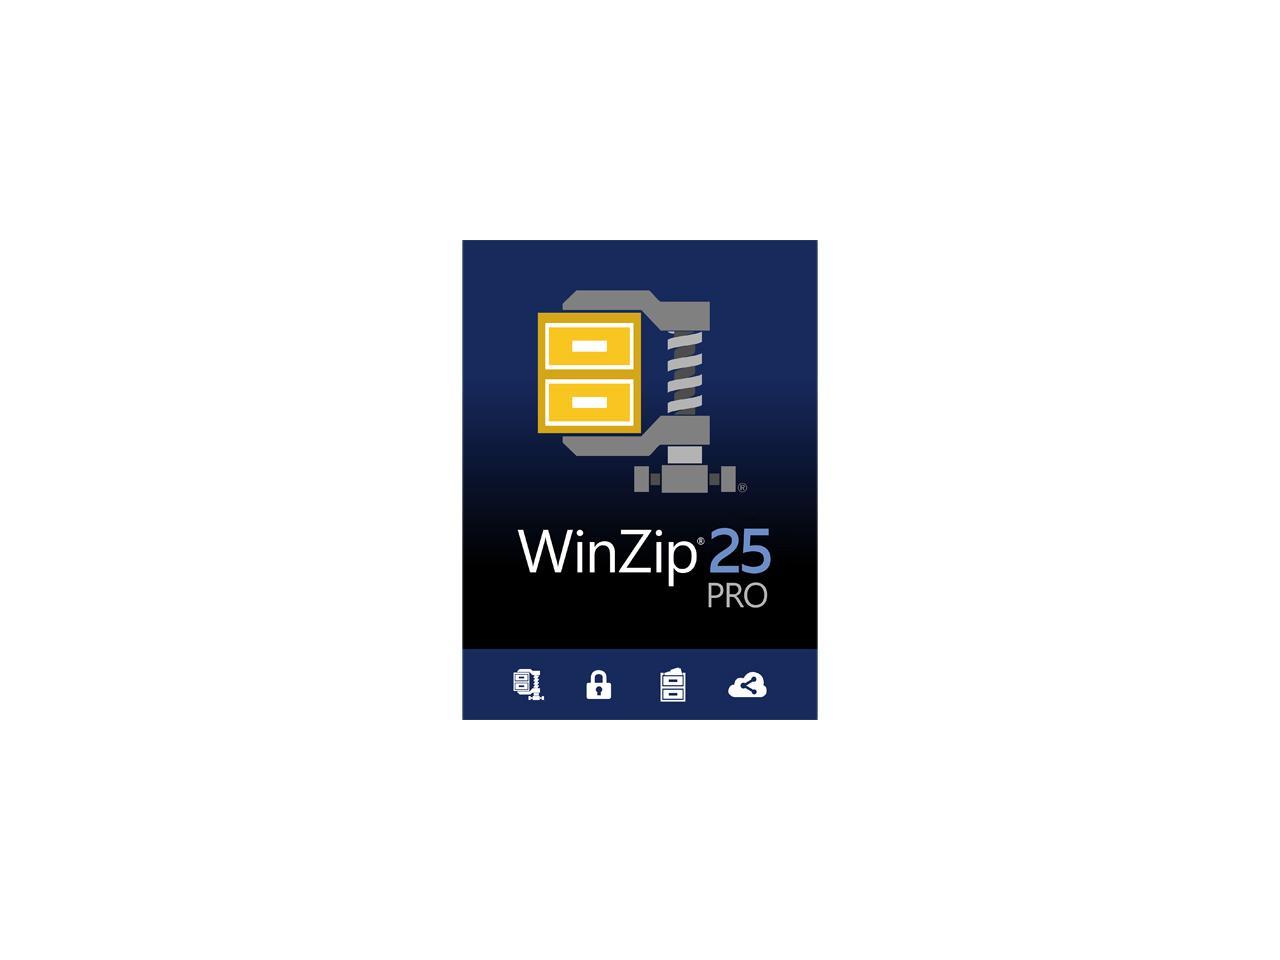 winzip 25 pro download